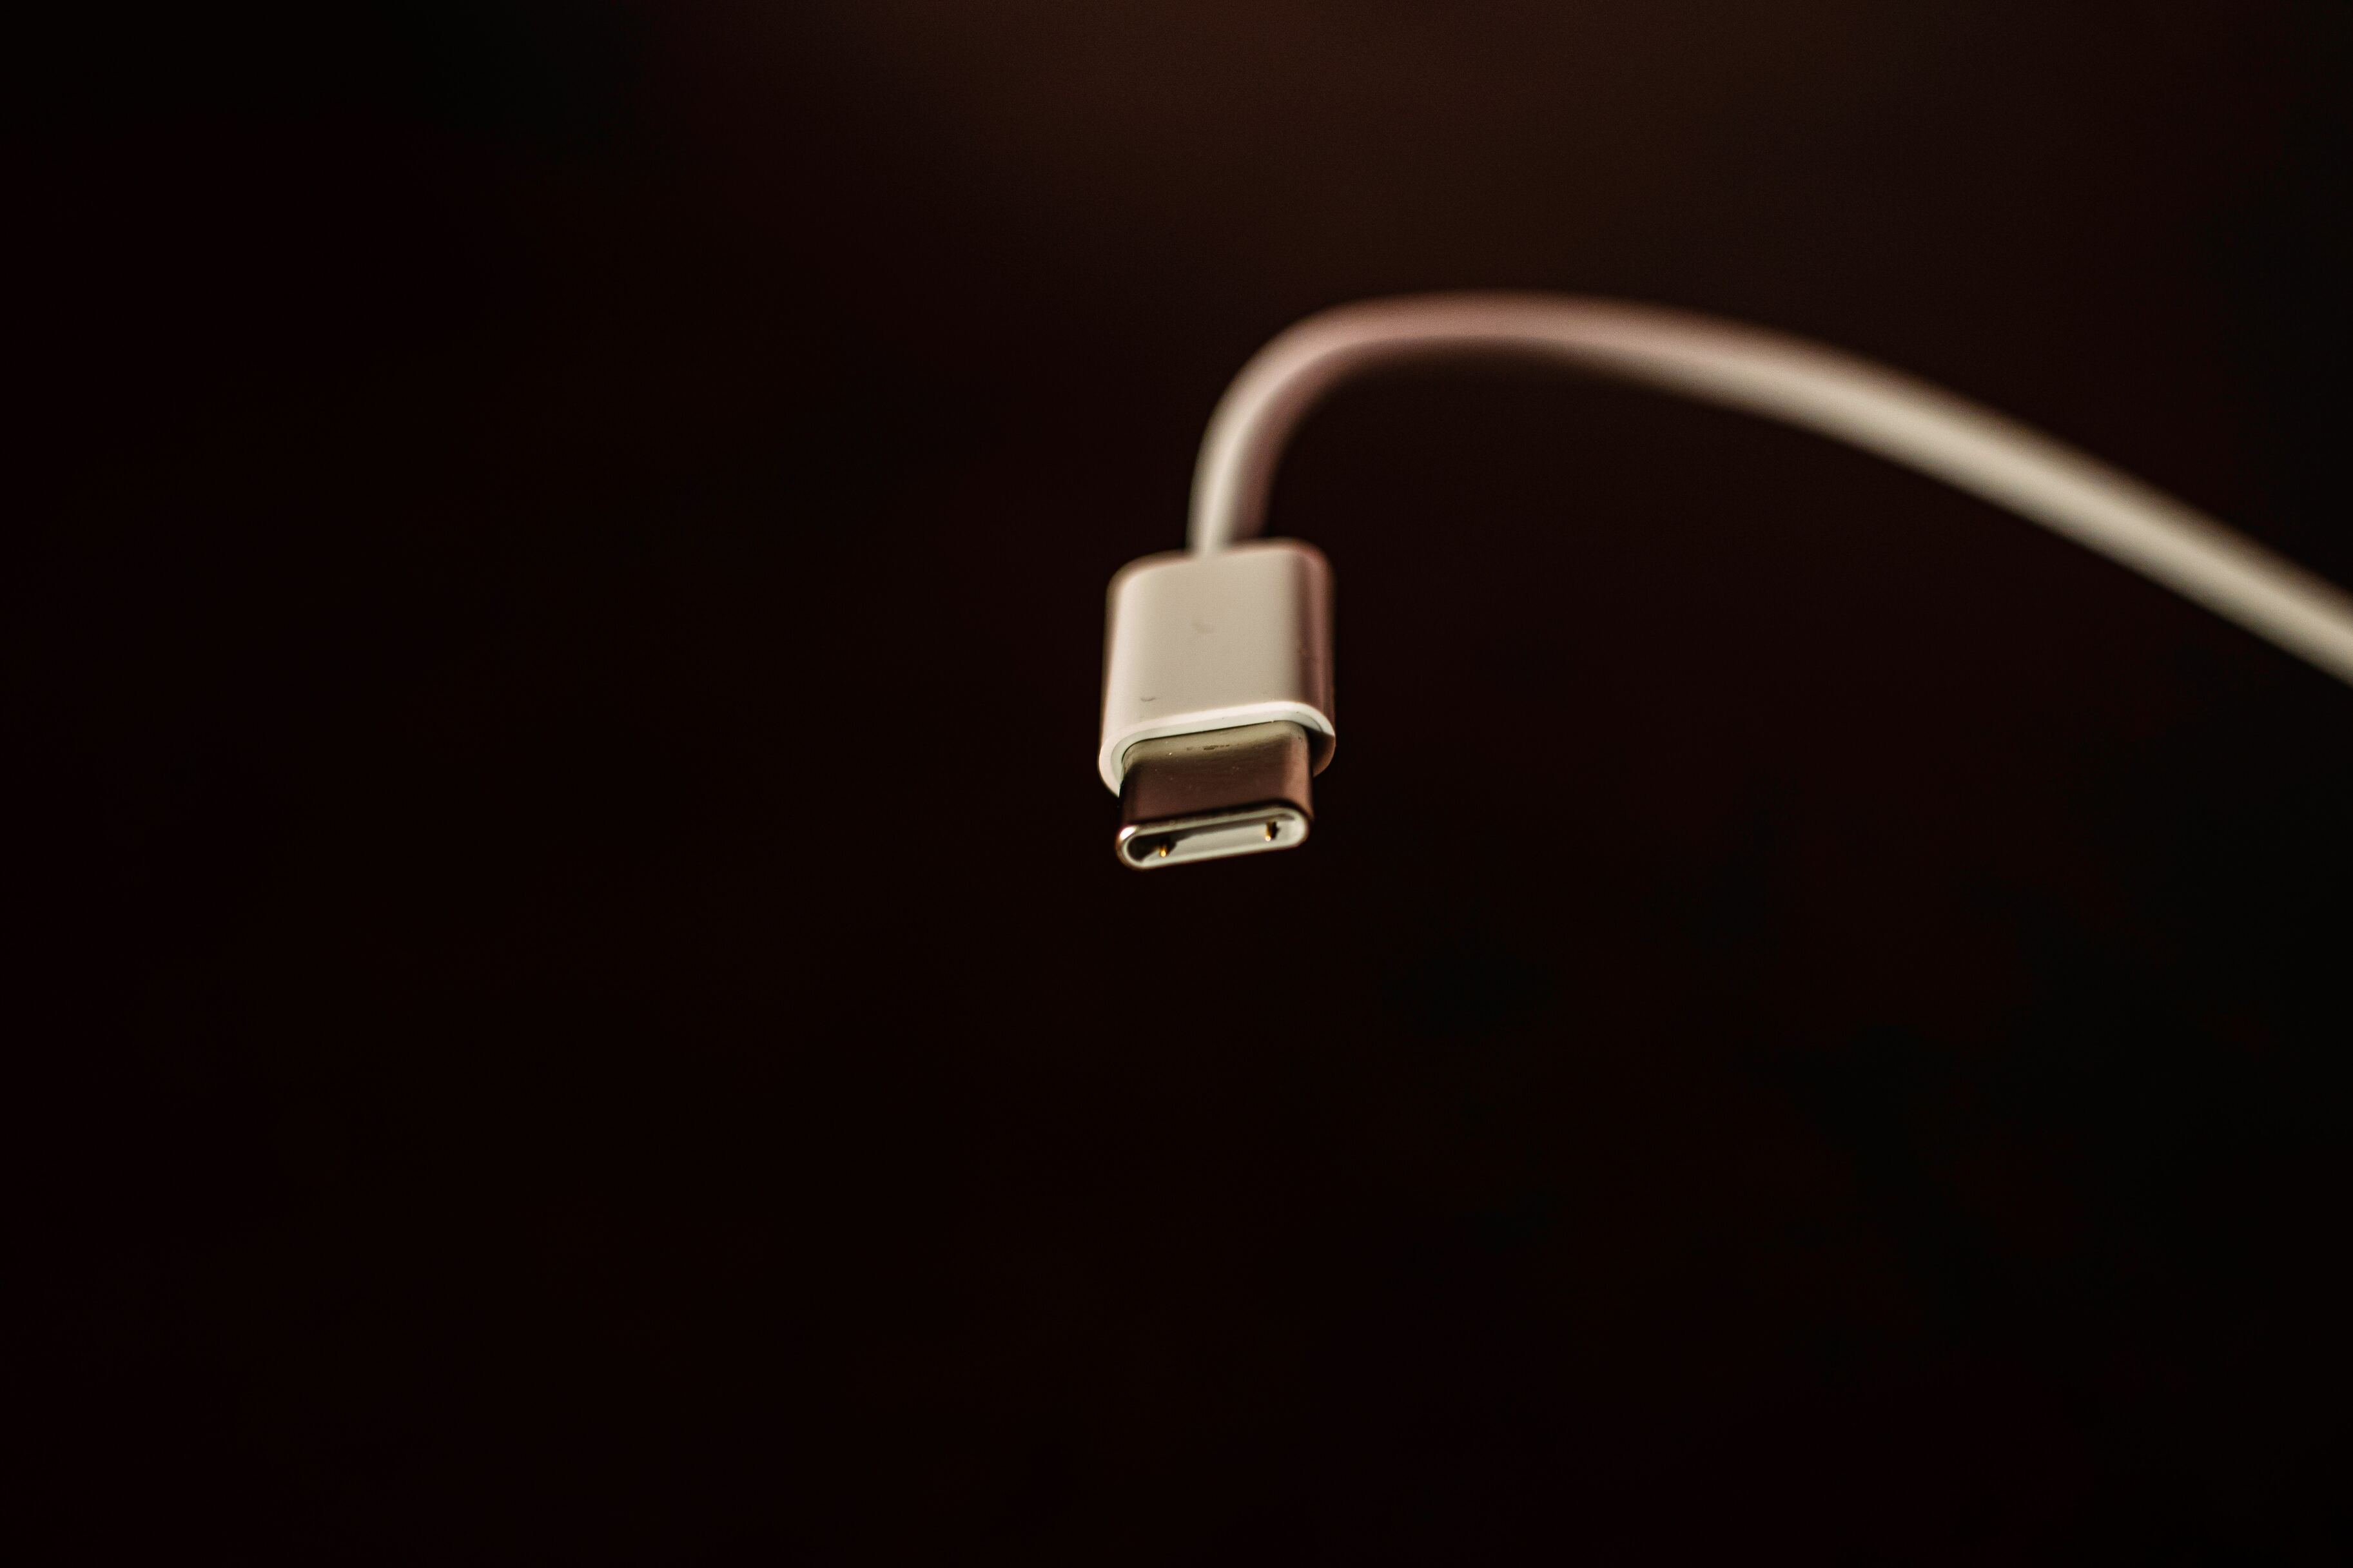 ЕС стандартизировал зарядку: USB Type-C теперь обязателен для гаджетов